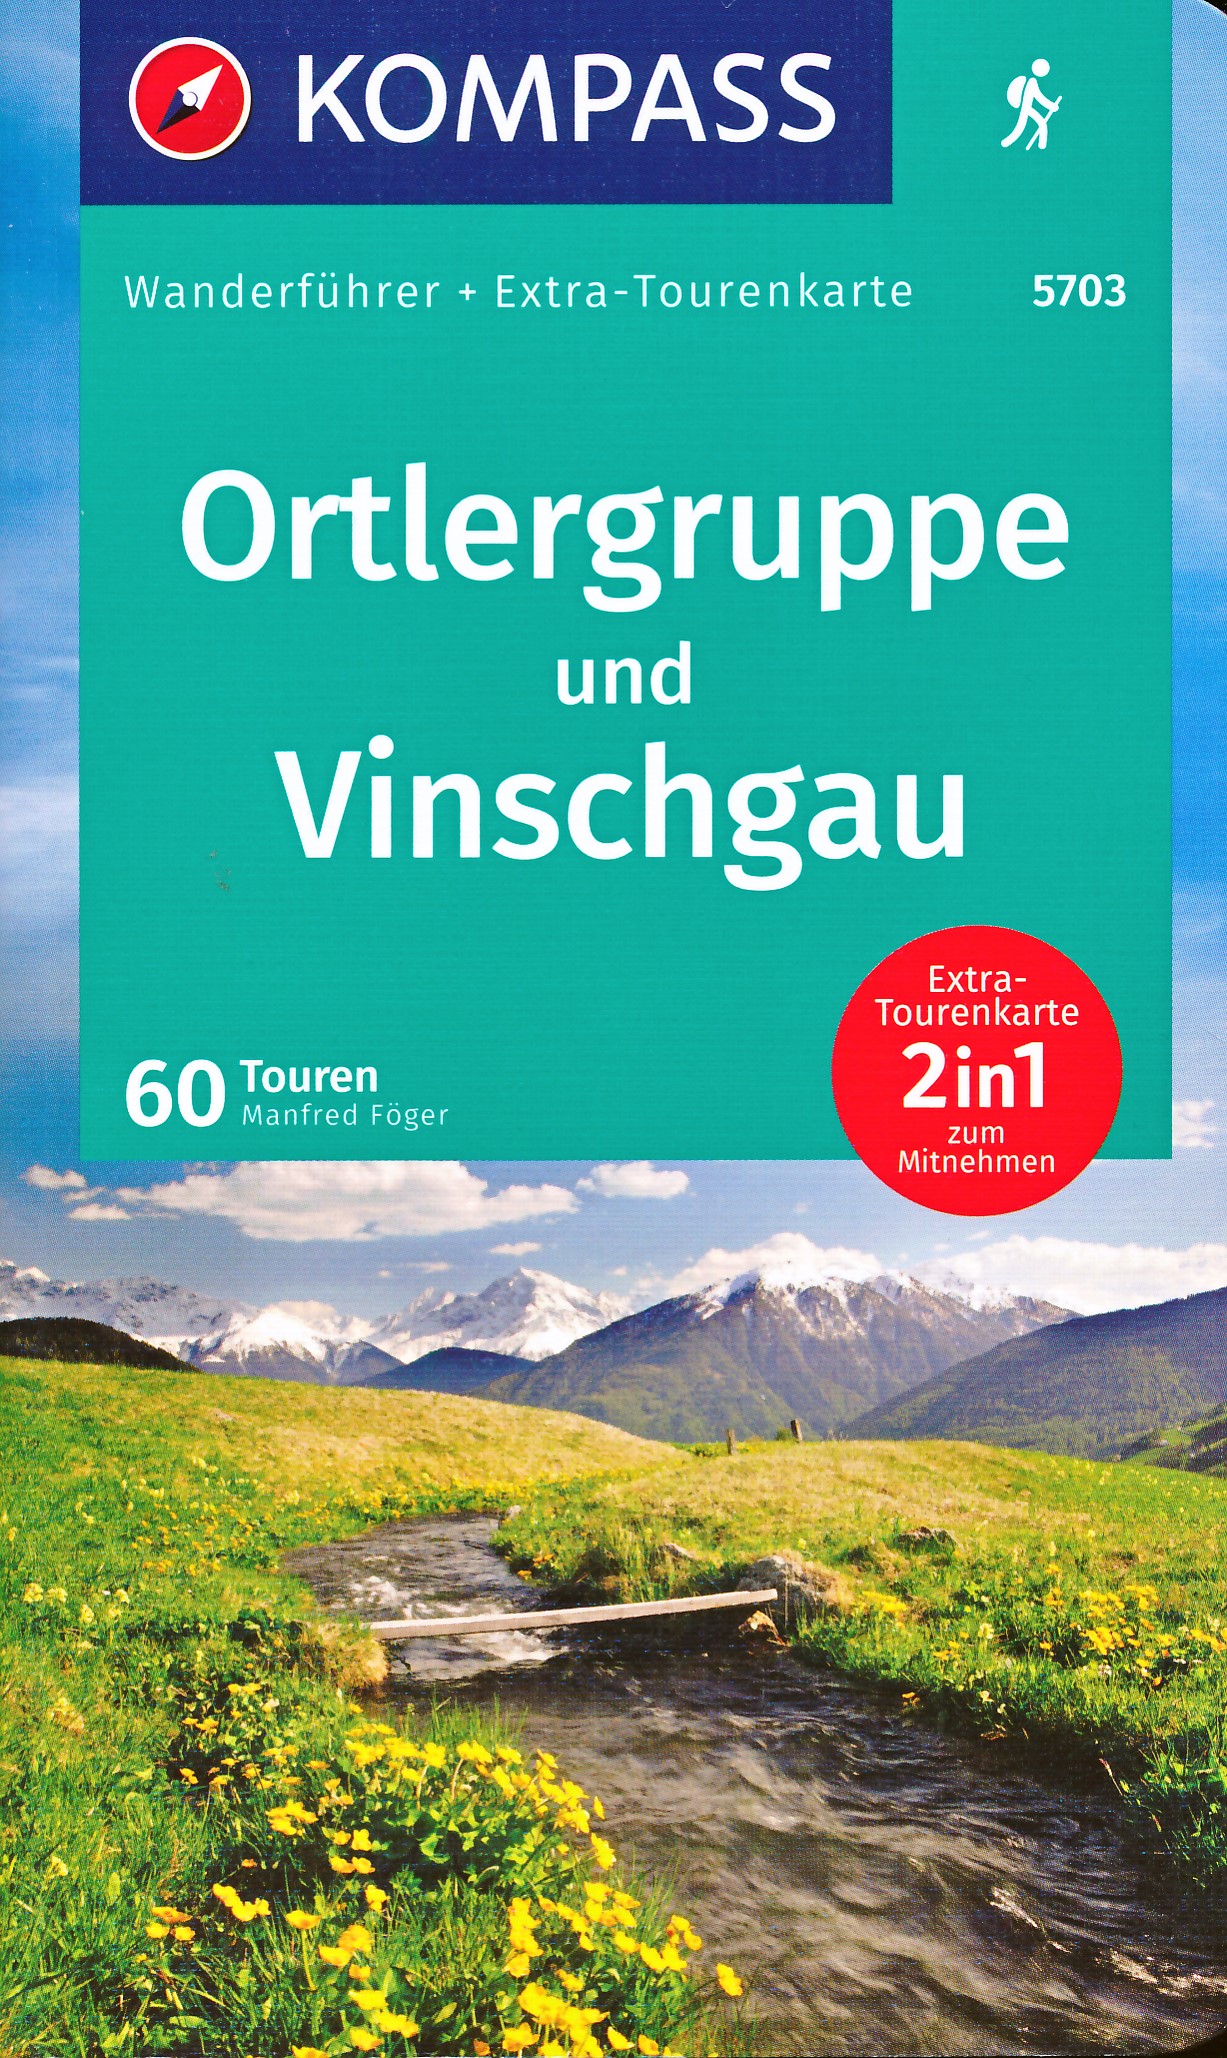 Online bestellen: Wandelgids Wanderführer Ortlergruppe und Vinschgau | Kompass